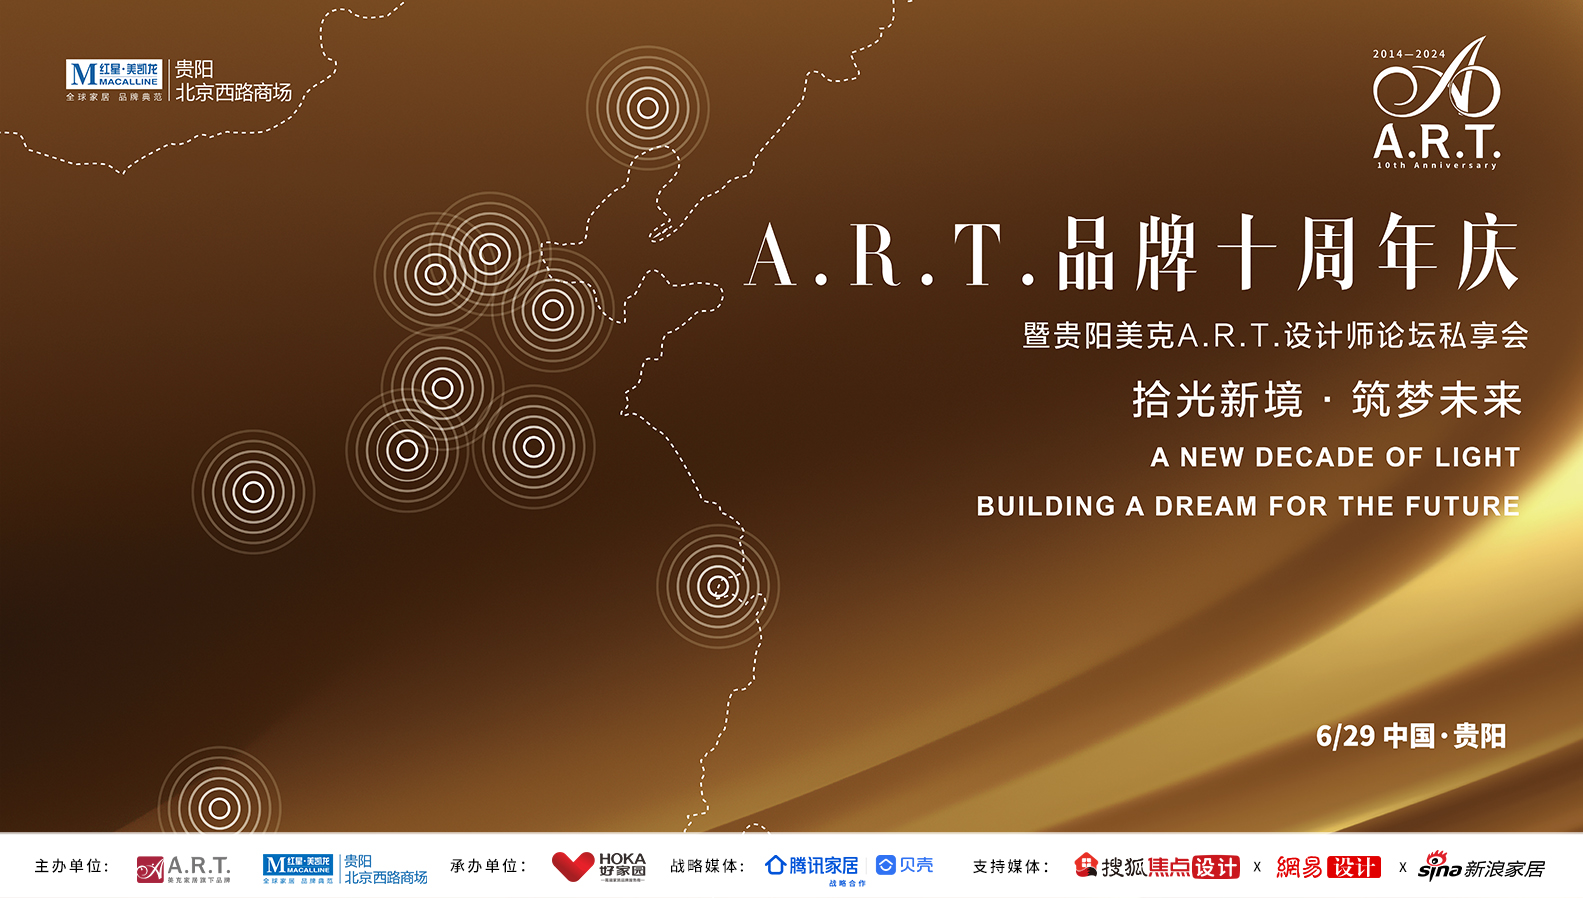 十载春秋更替，见证了A.R.T.璀璨的过往。今年是A.R.T.品牌进入中国市场的第10个年头。十年前，A.R.T.承载了以建筑美学满足现代人居生活的责任，将追求...